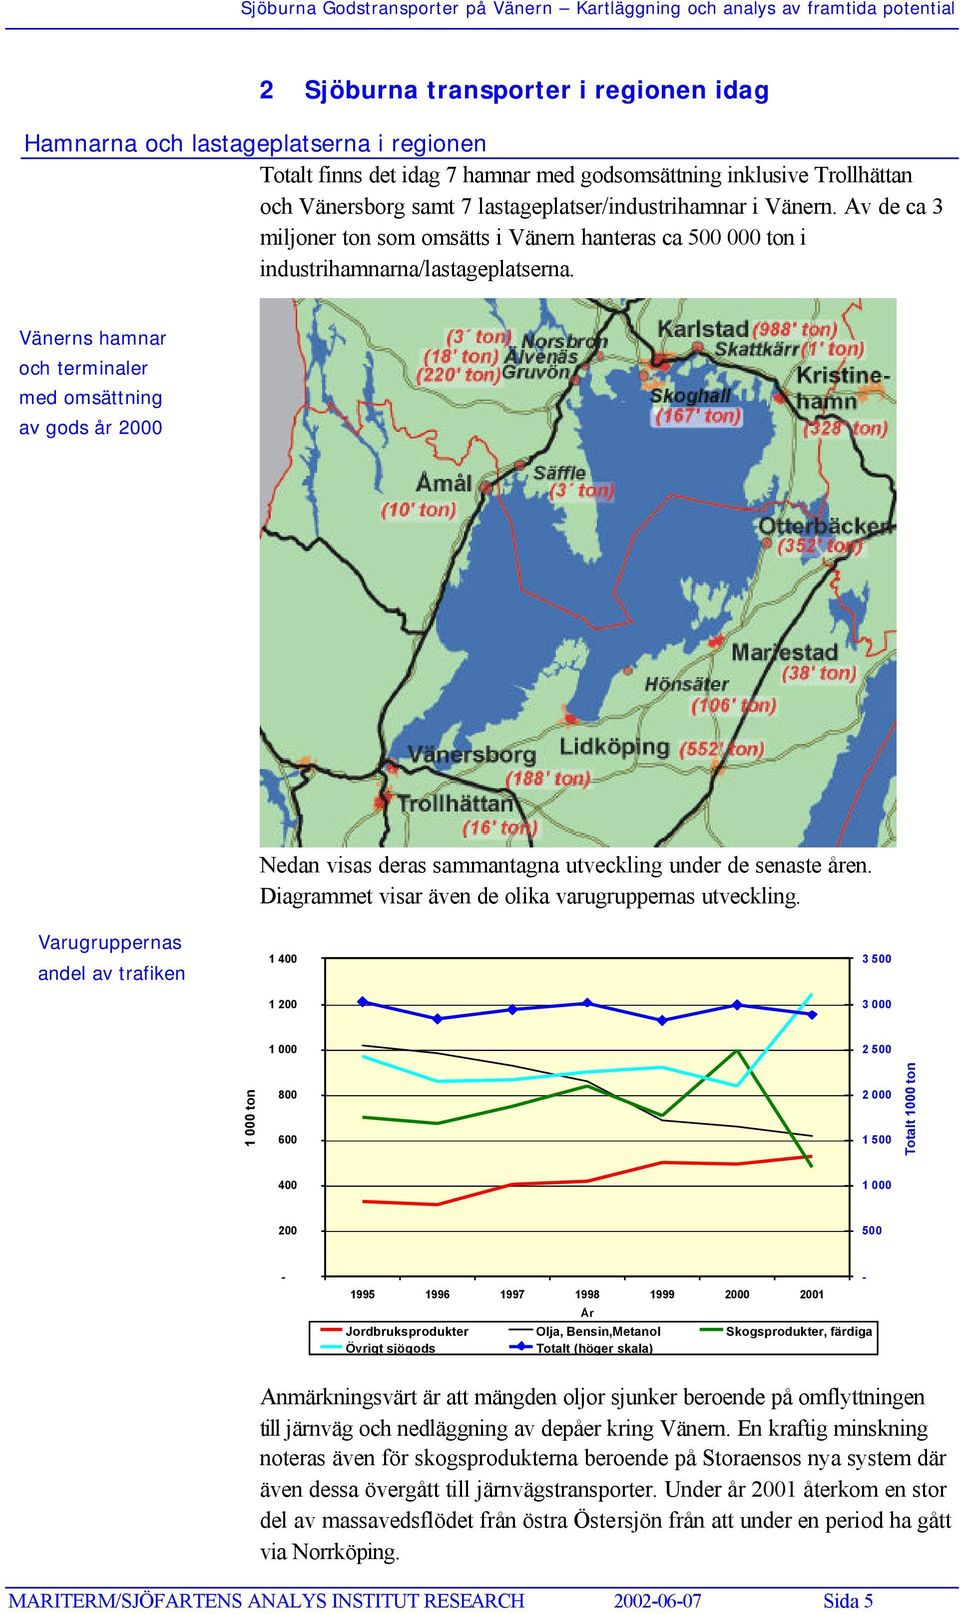 Vänerns hamnar och terminaler med omsättning av gods år 2000 Nedan visas deras sammantagna utveckling under de senaste åren. Diagrammet visar även de olika varugruppernas utveckling.